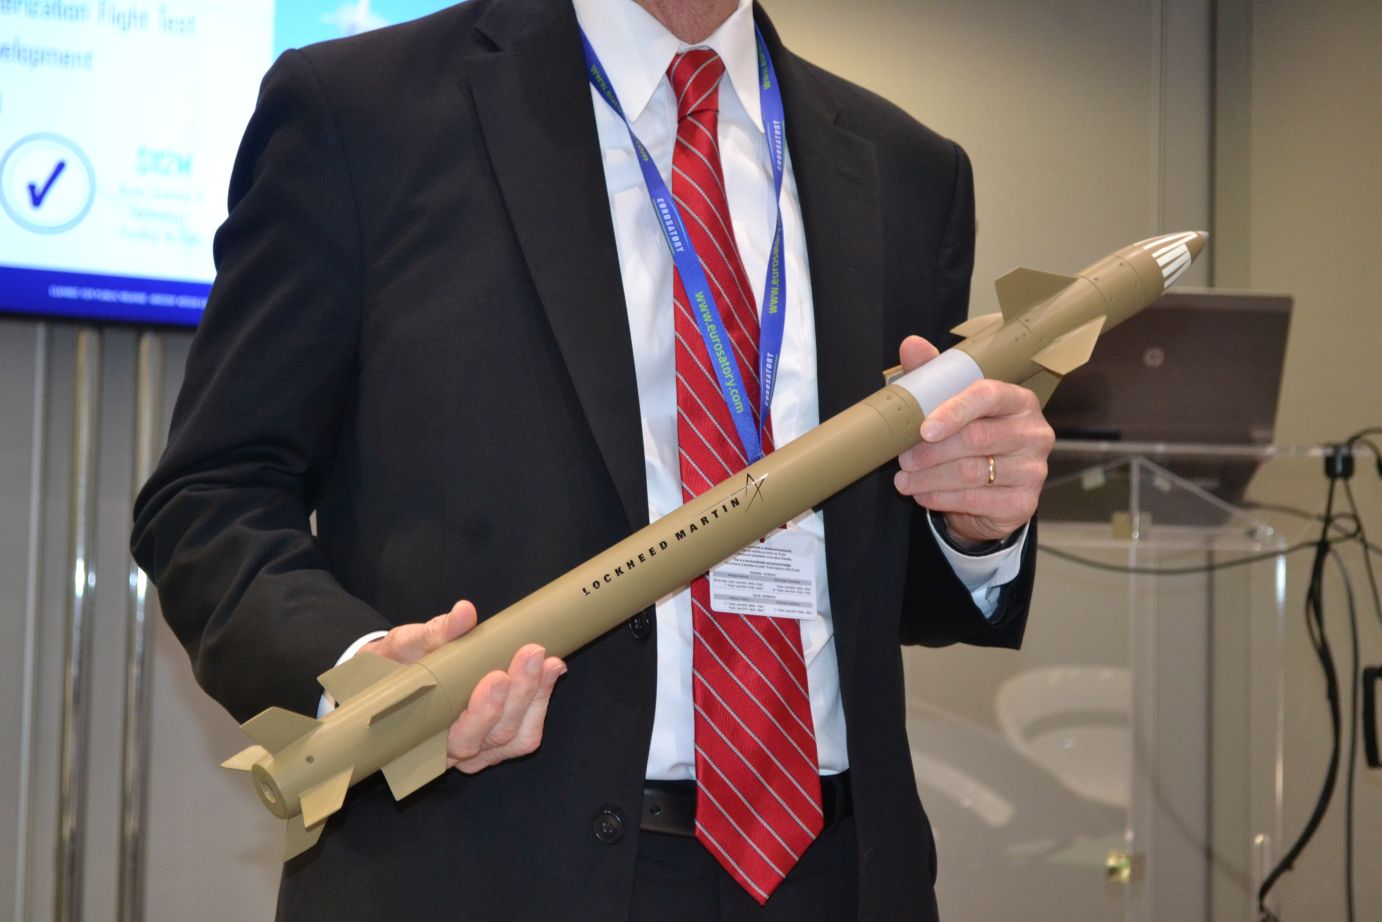 Pełnowymiarowy model rakiety MHTK, która ma służyć przede wszystkim do zwalczania pocisków z artylerii lufowej i rakietowej oraz moździerzy. Fot. M.Dura